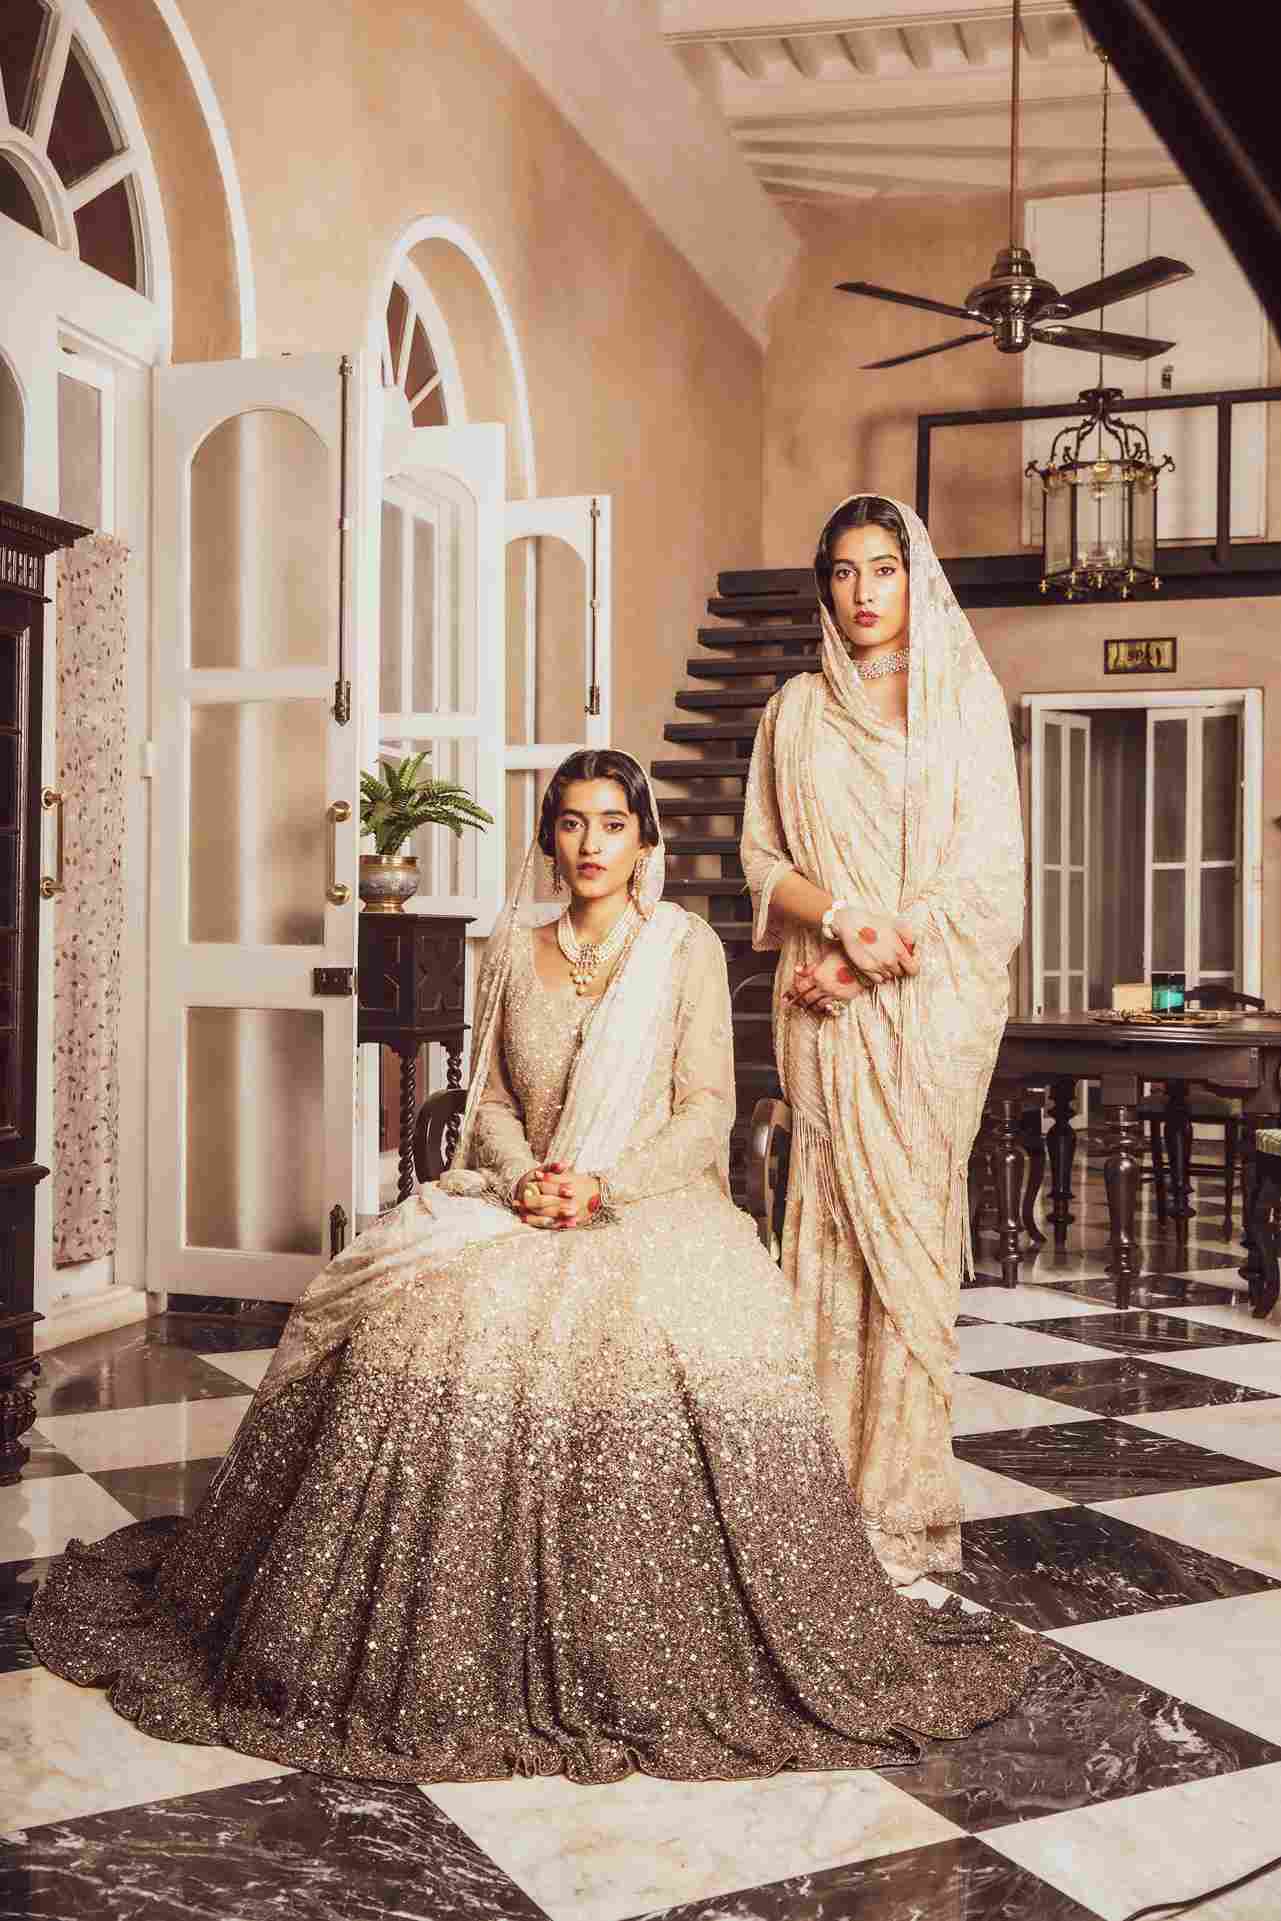 The Bhanj Deo sisters Akshita and Mrinalika